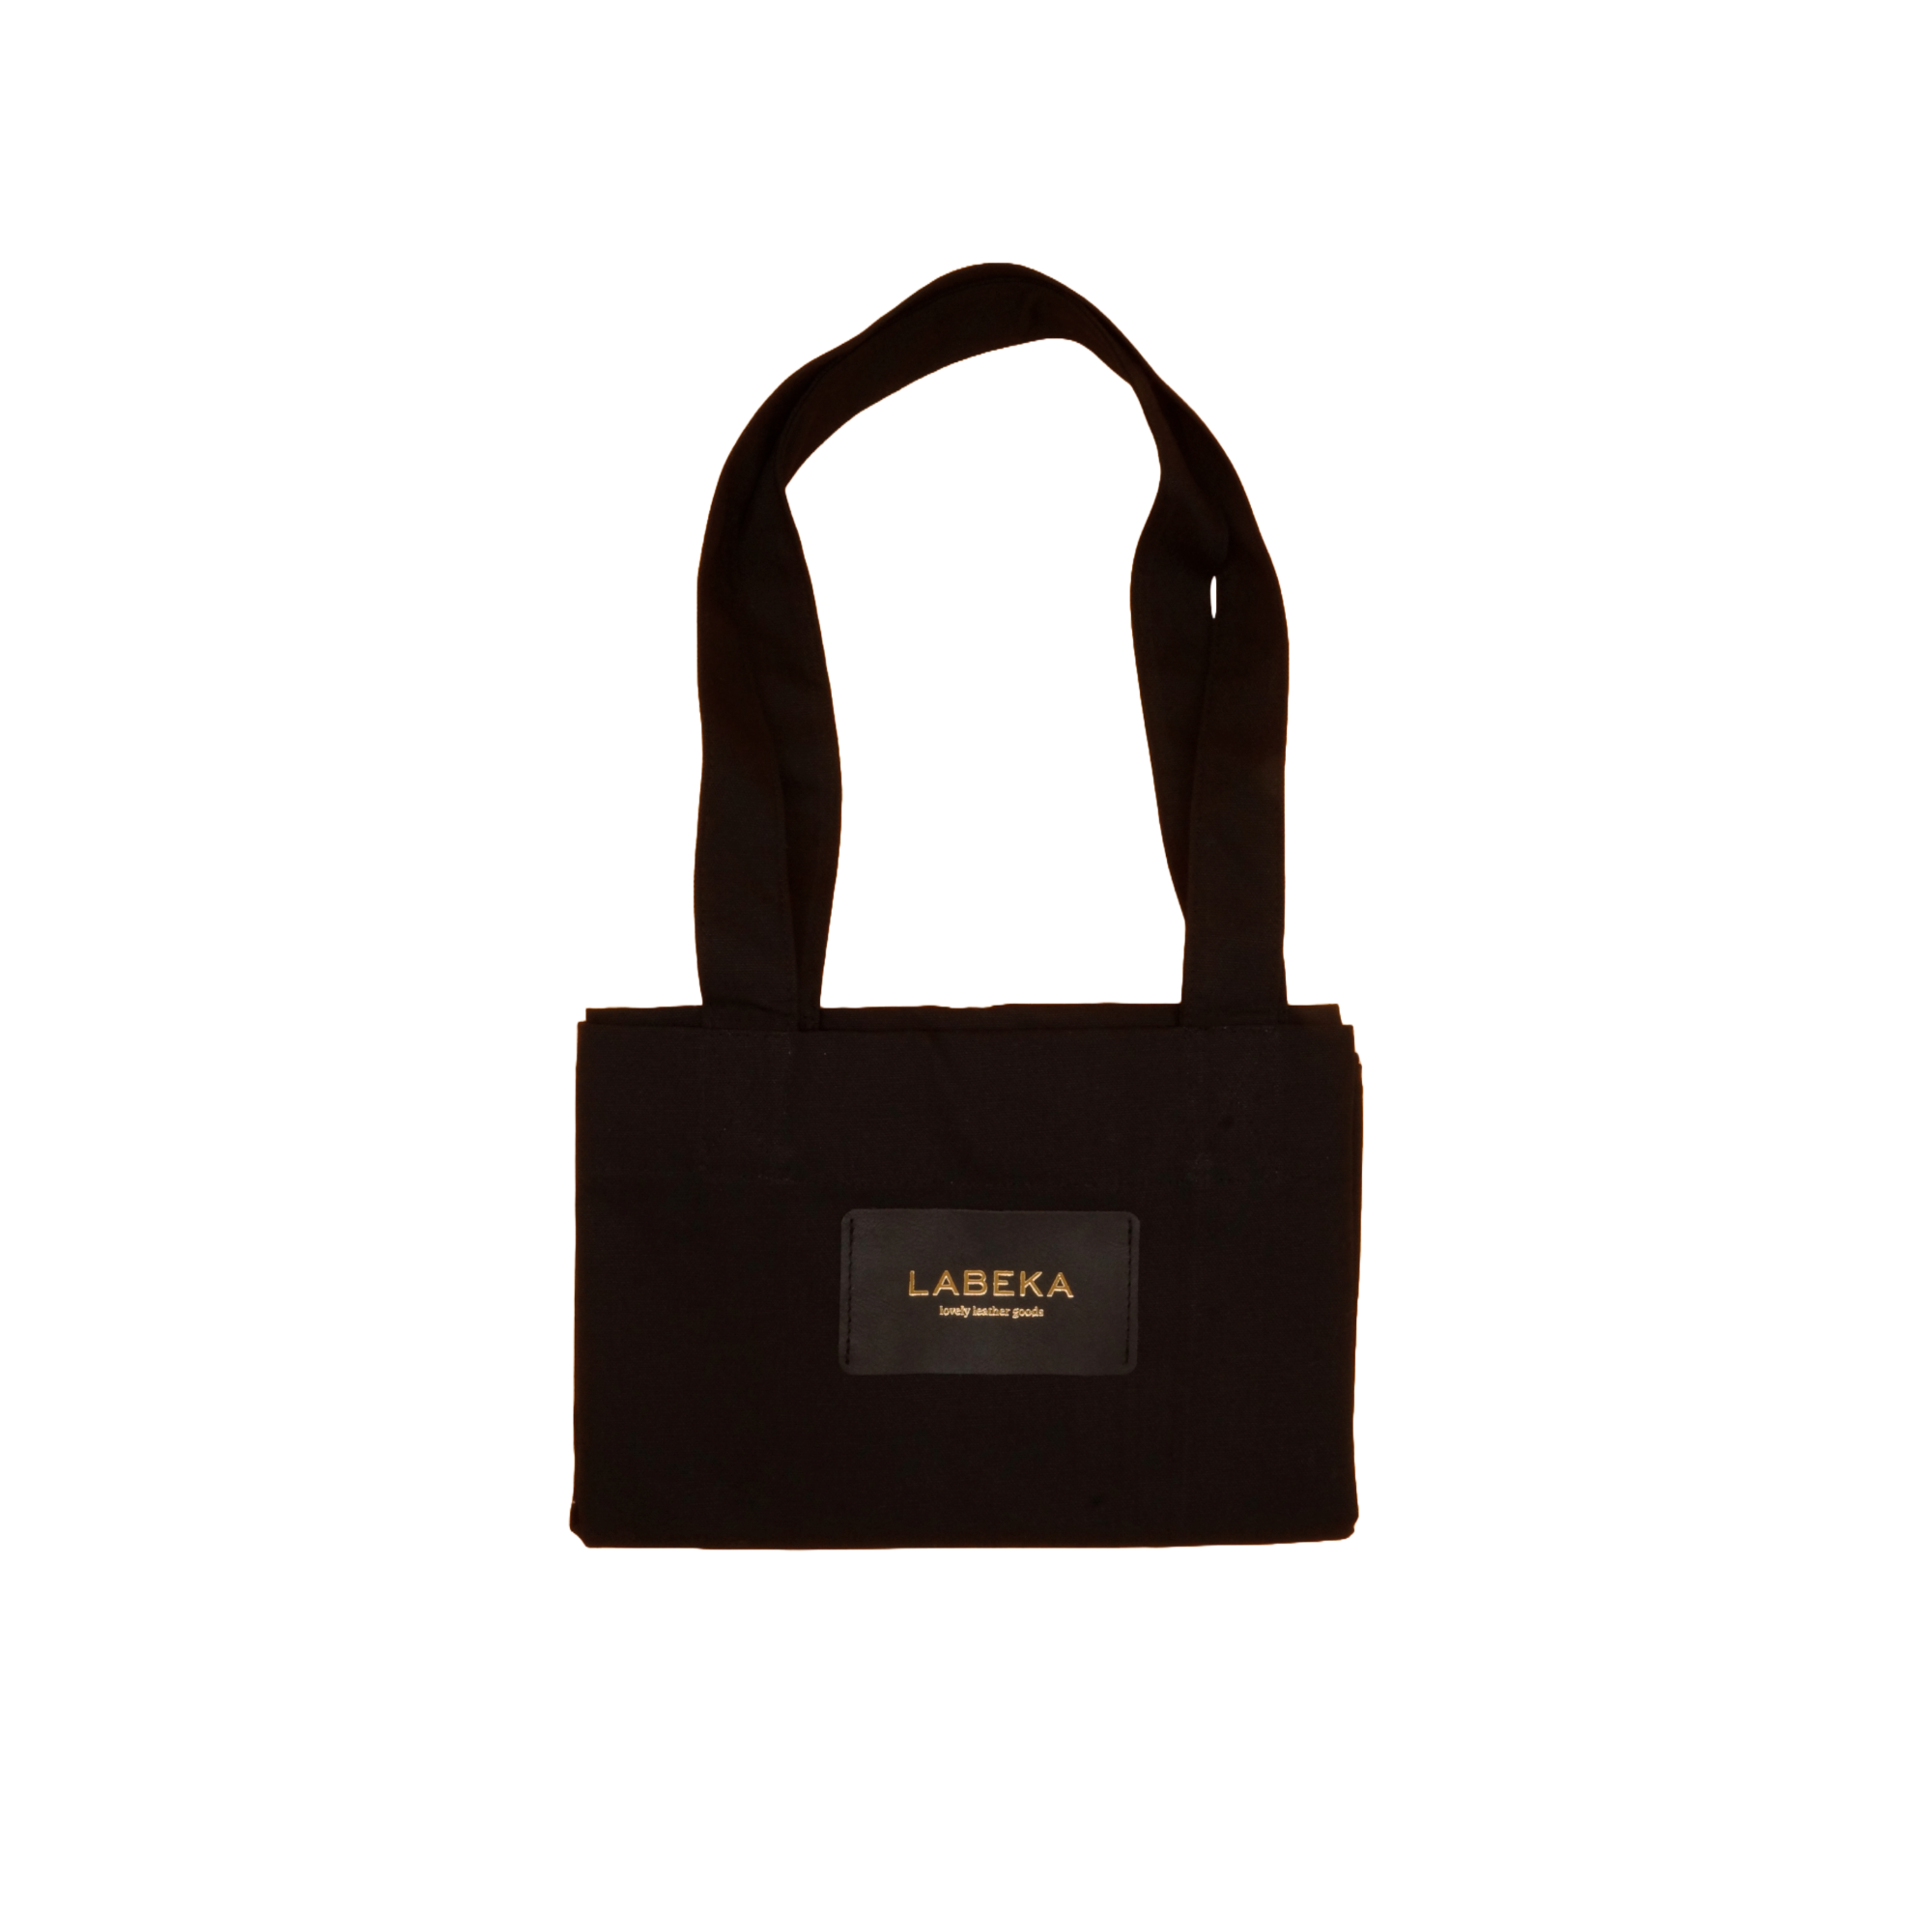 Schwarze Shopping Bag aus Baumwolle von LABEKA gefaltet